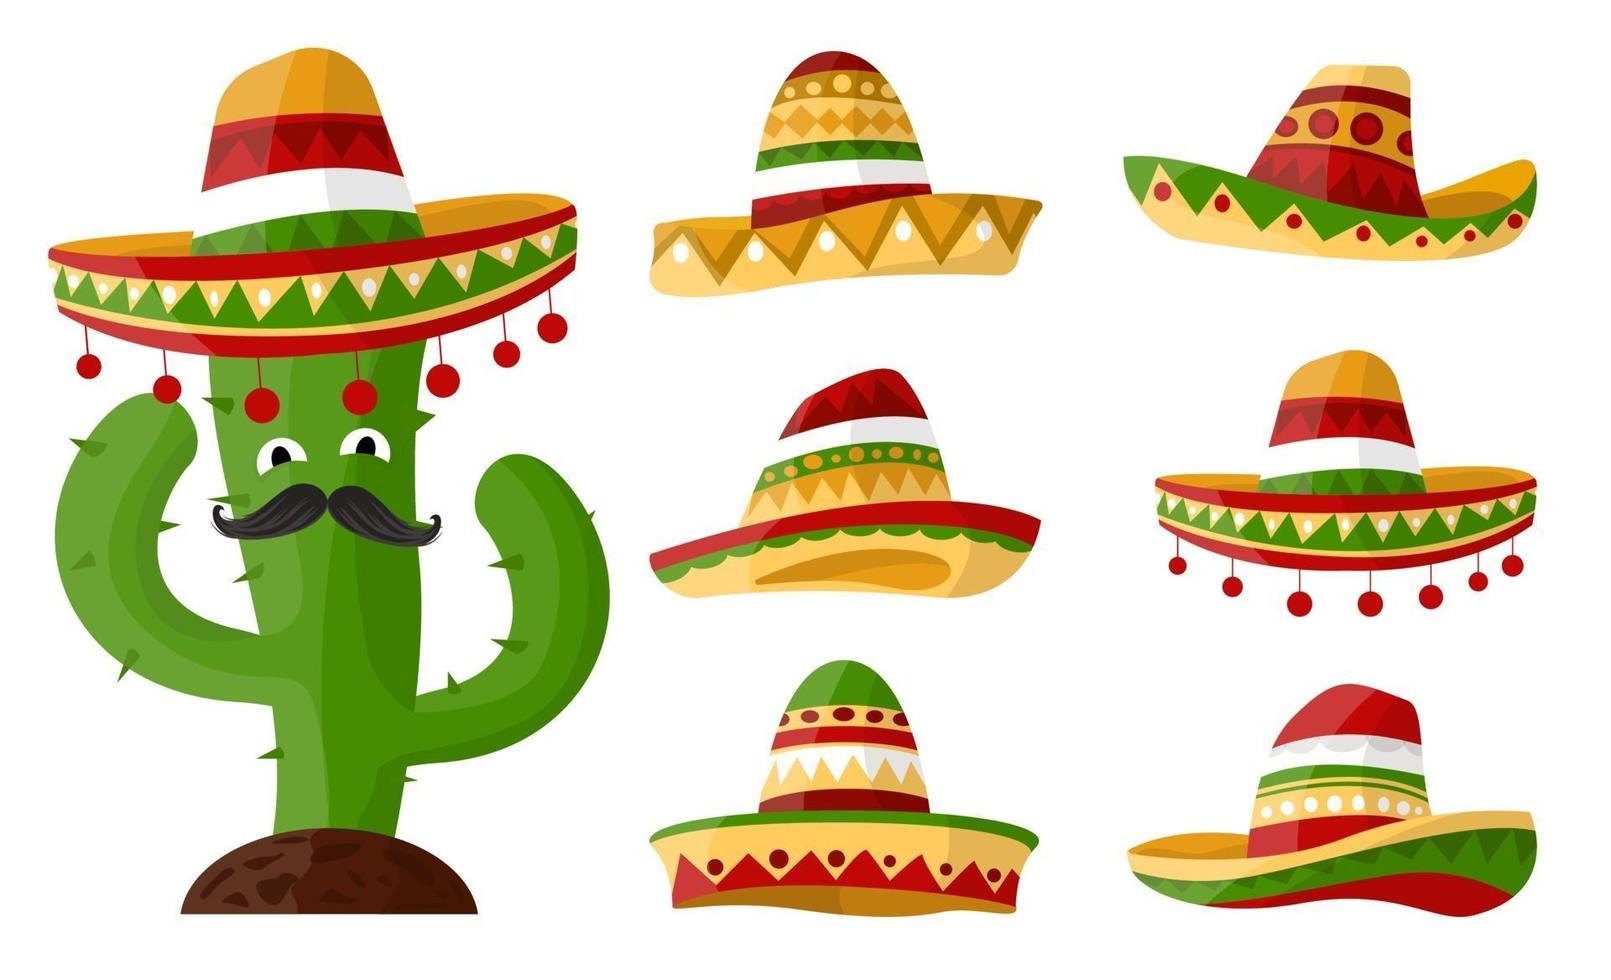 cactus messicano del fumetto con set di sombreri con ornamenti colorati art. cappello su sfondo isolato per il vostro disegno vettoriale